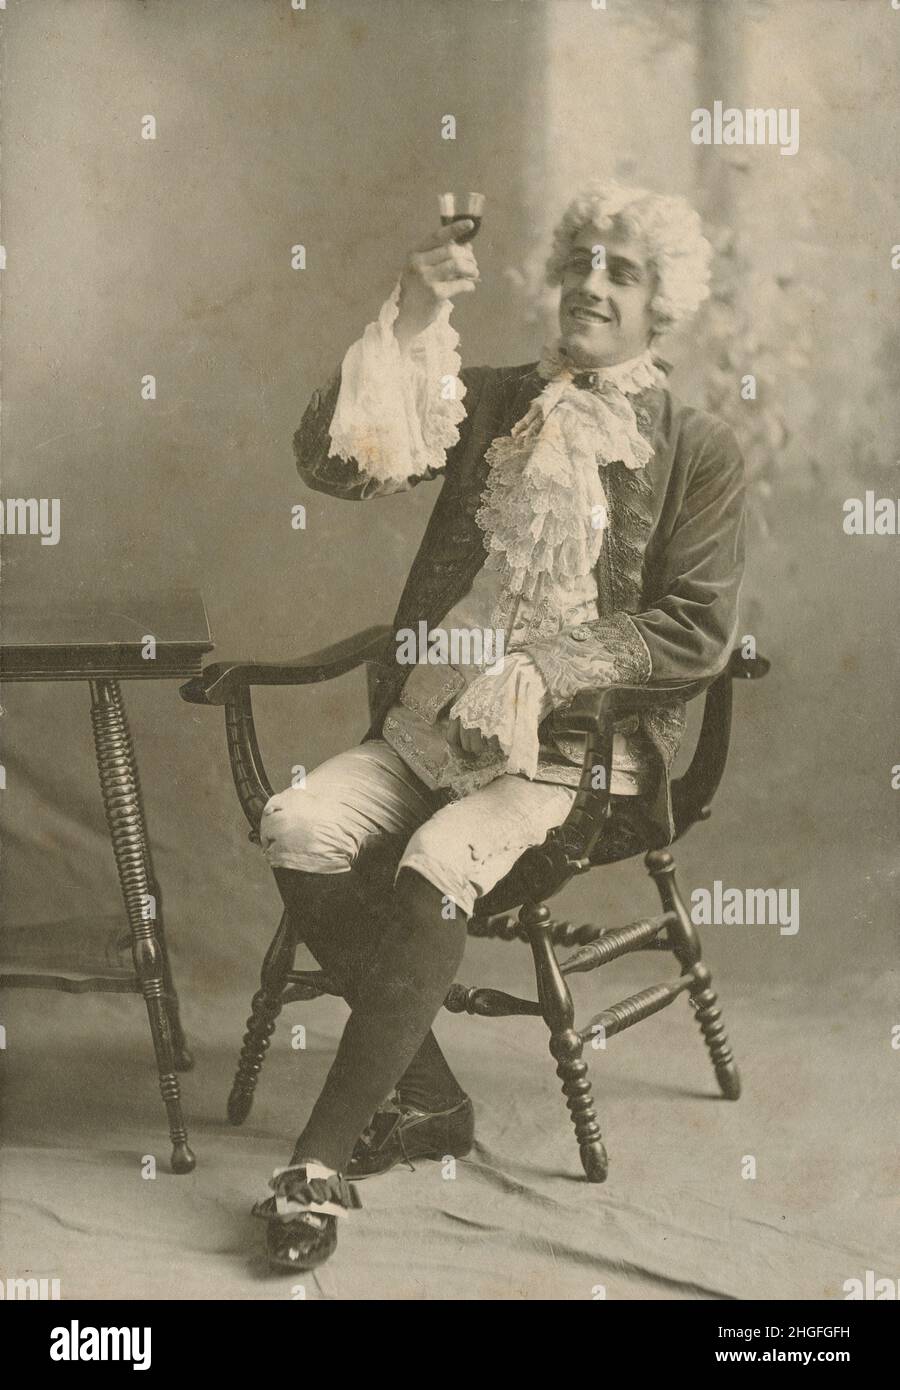 Fotografia antica del 1910 circa, uomo che alza un vetro vestito in moda del periodo 18th secolo con braghe, calze, merletto cravat, parrucca, polsini, e le fibbie delle scarpe. FONTE: FOTOGRAFIA ORIGINALE Foto Stock